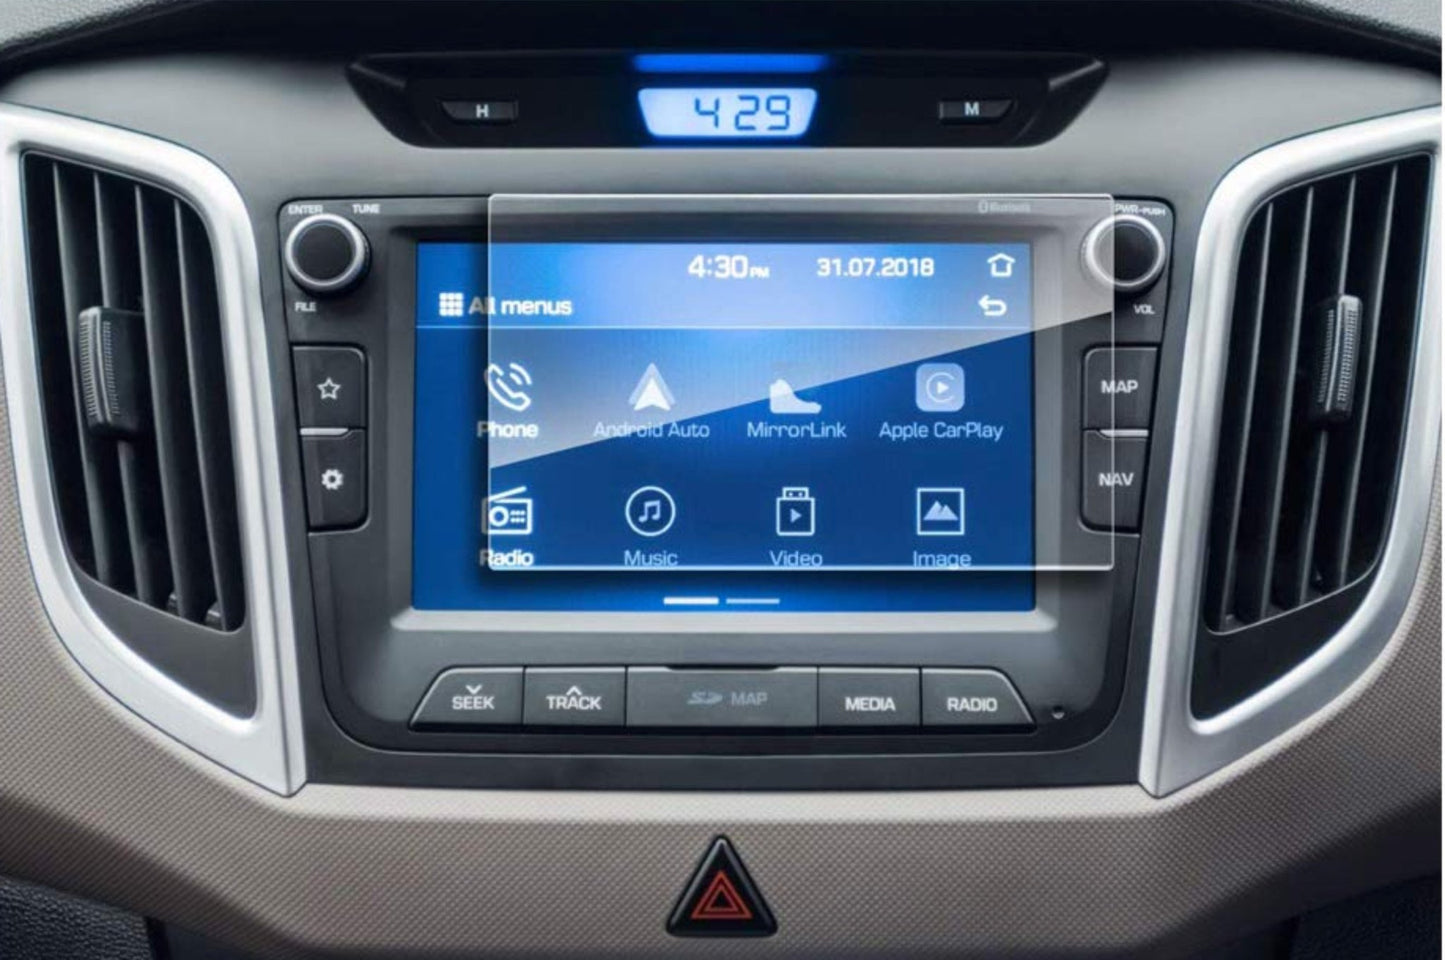 Hyundai Creta Accessories Touch Screen Guard -OLD_CRETA